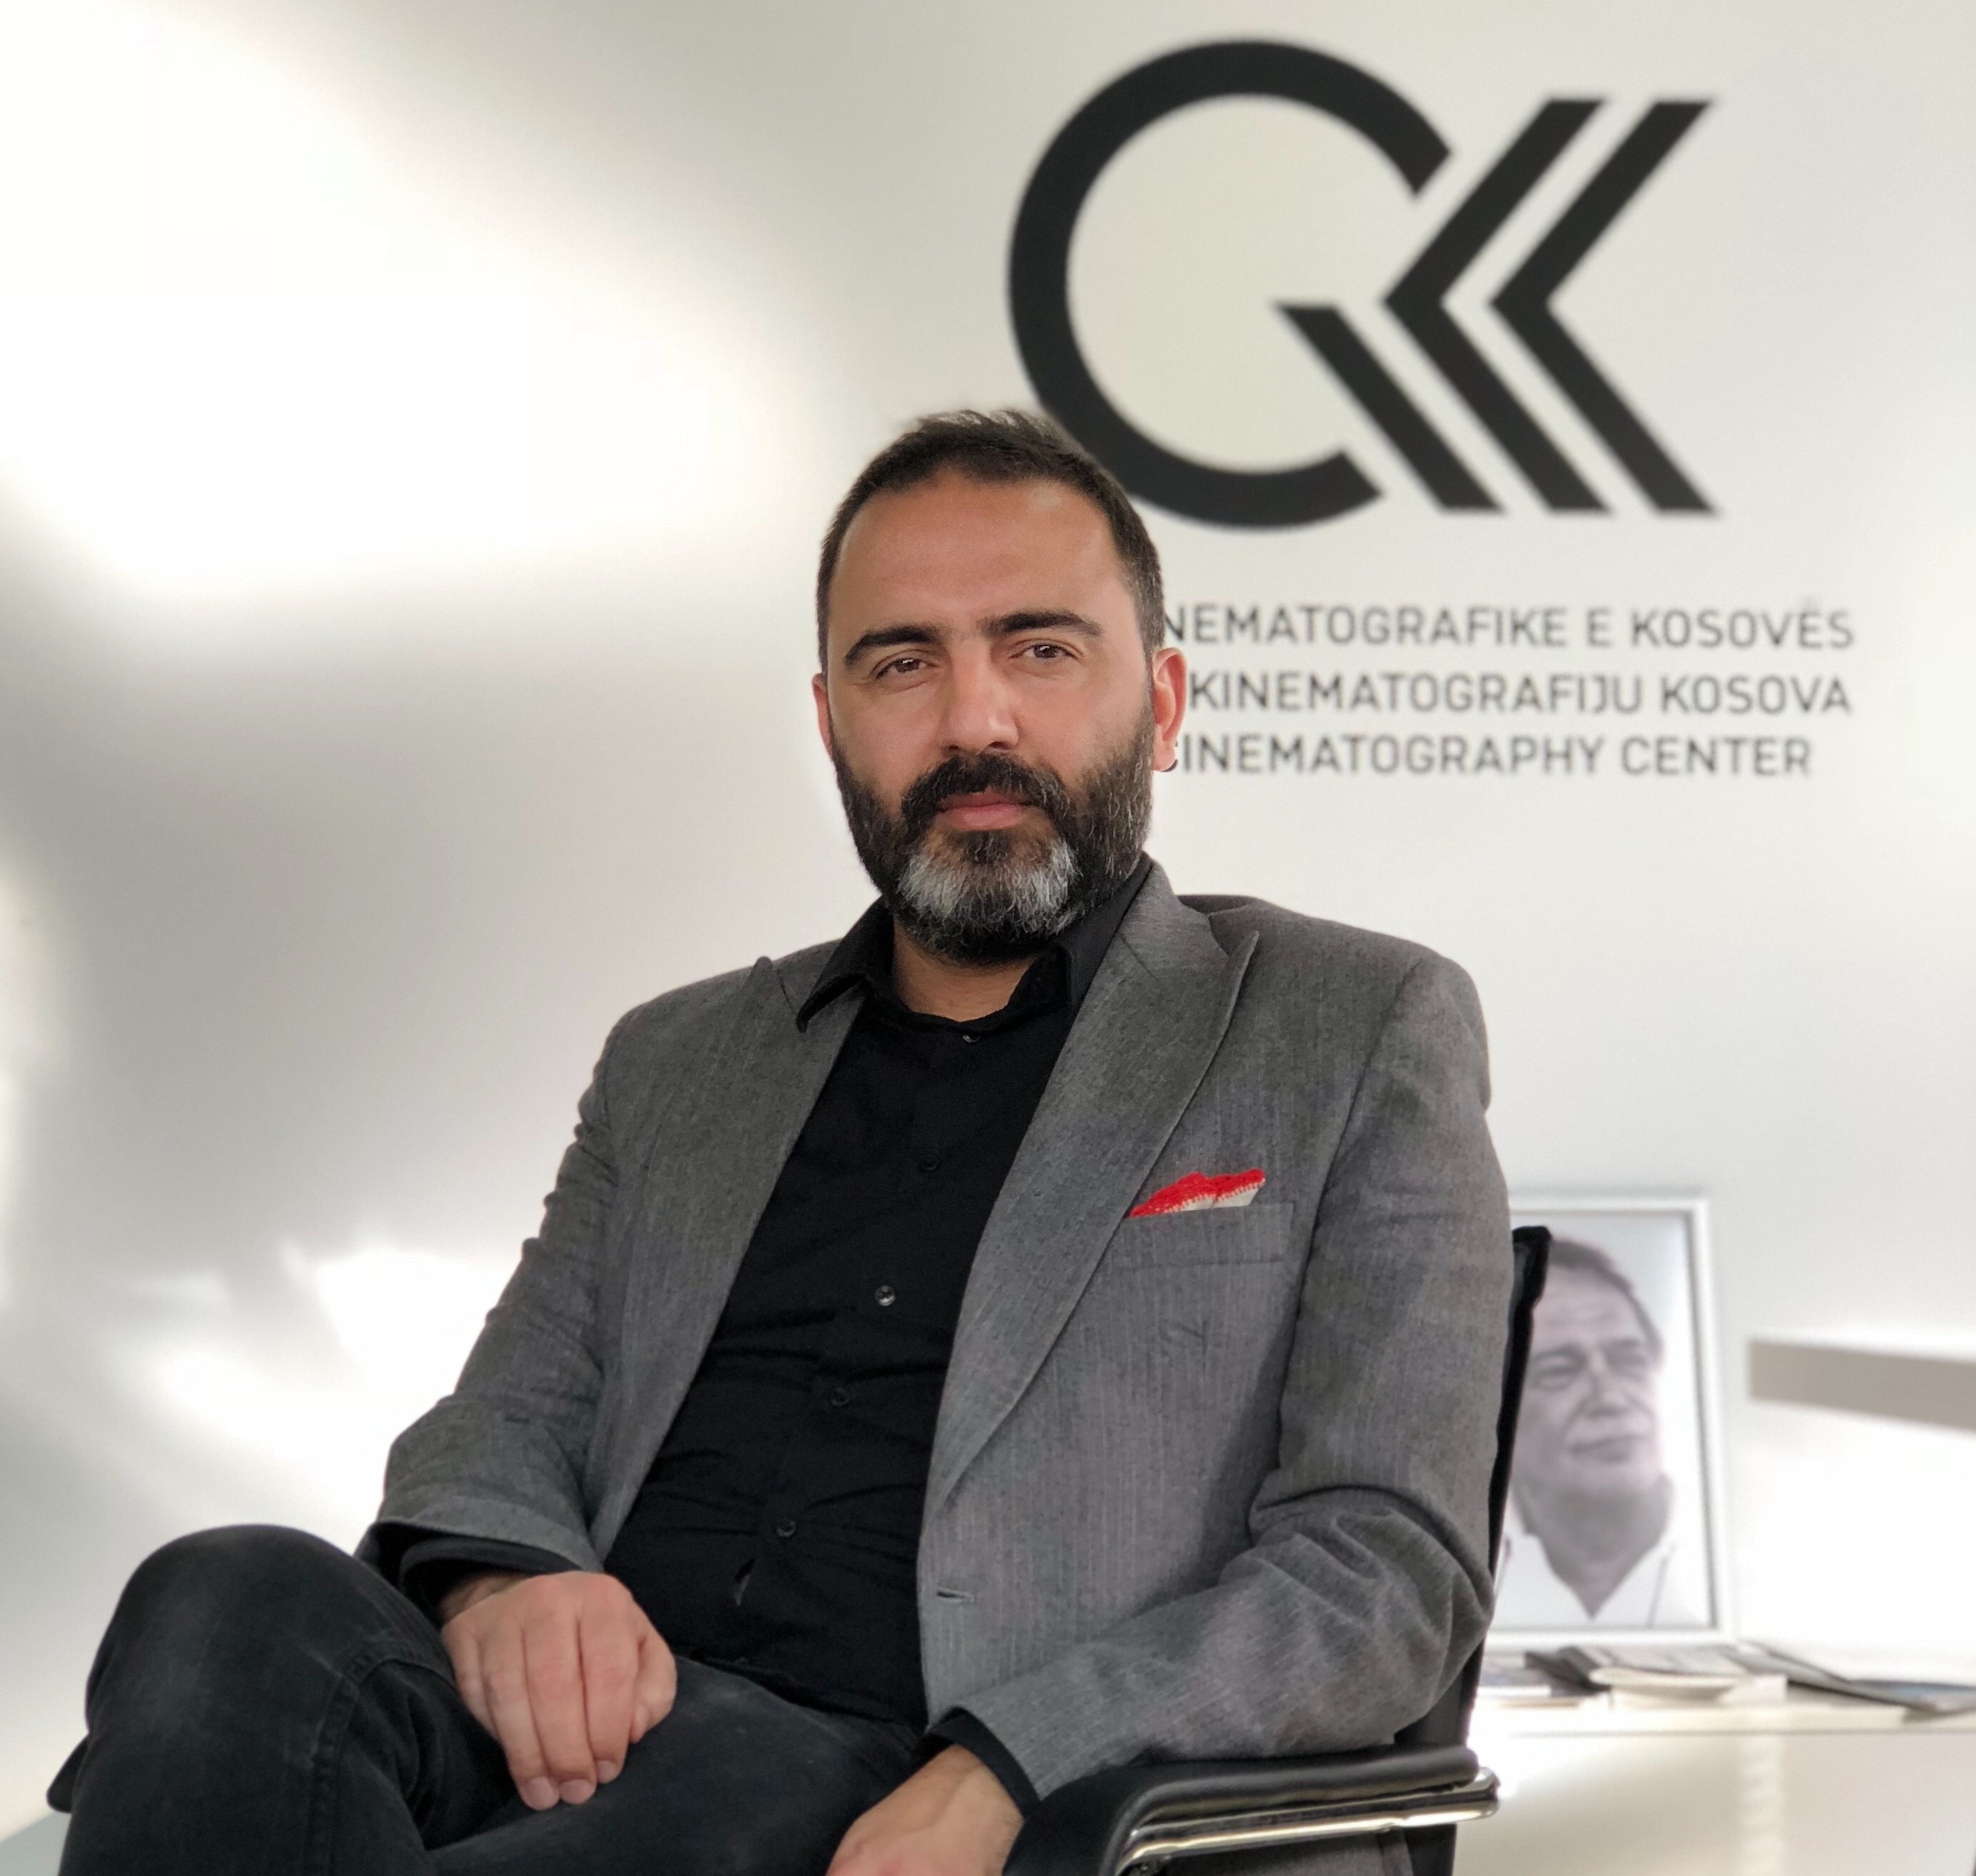 Arben Zharku emërohet drejtor i Qendrës Kinematografike të Kosovës